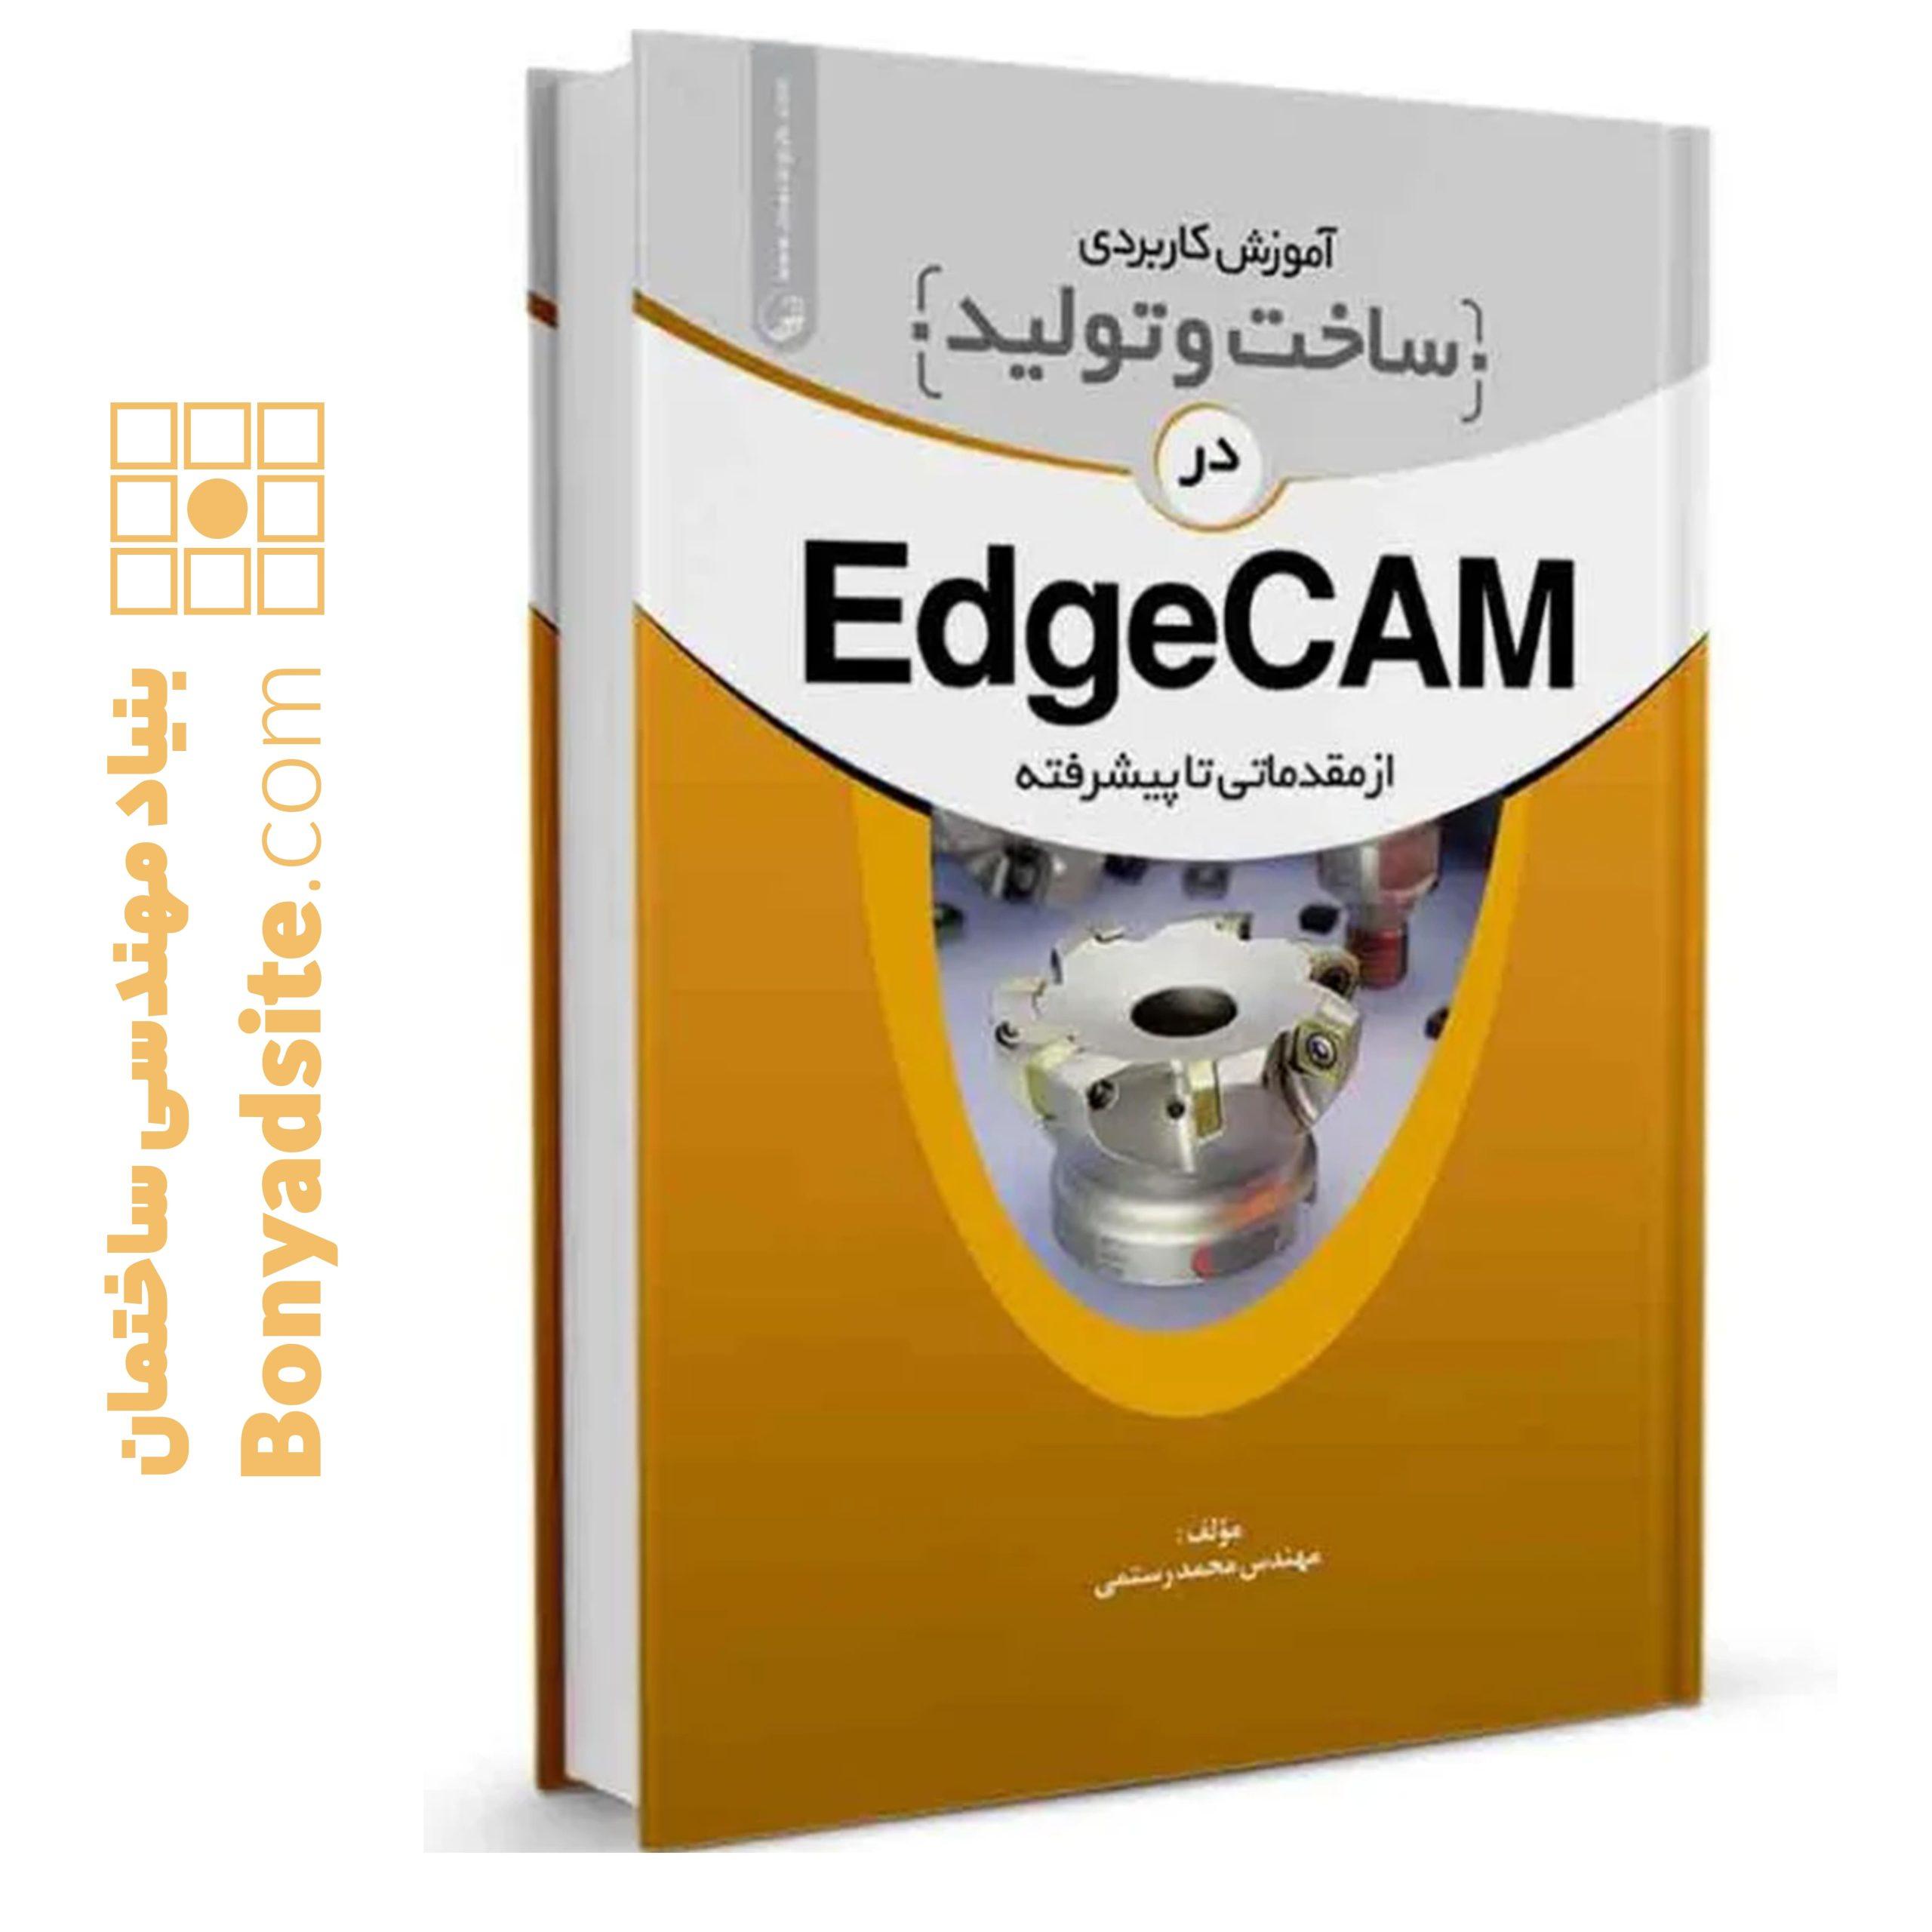 کتاب آموزش کاربردی ساخت و تولید در EdgeCam